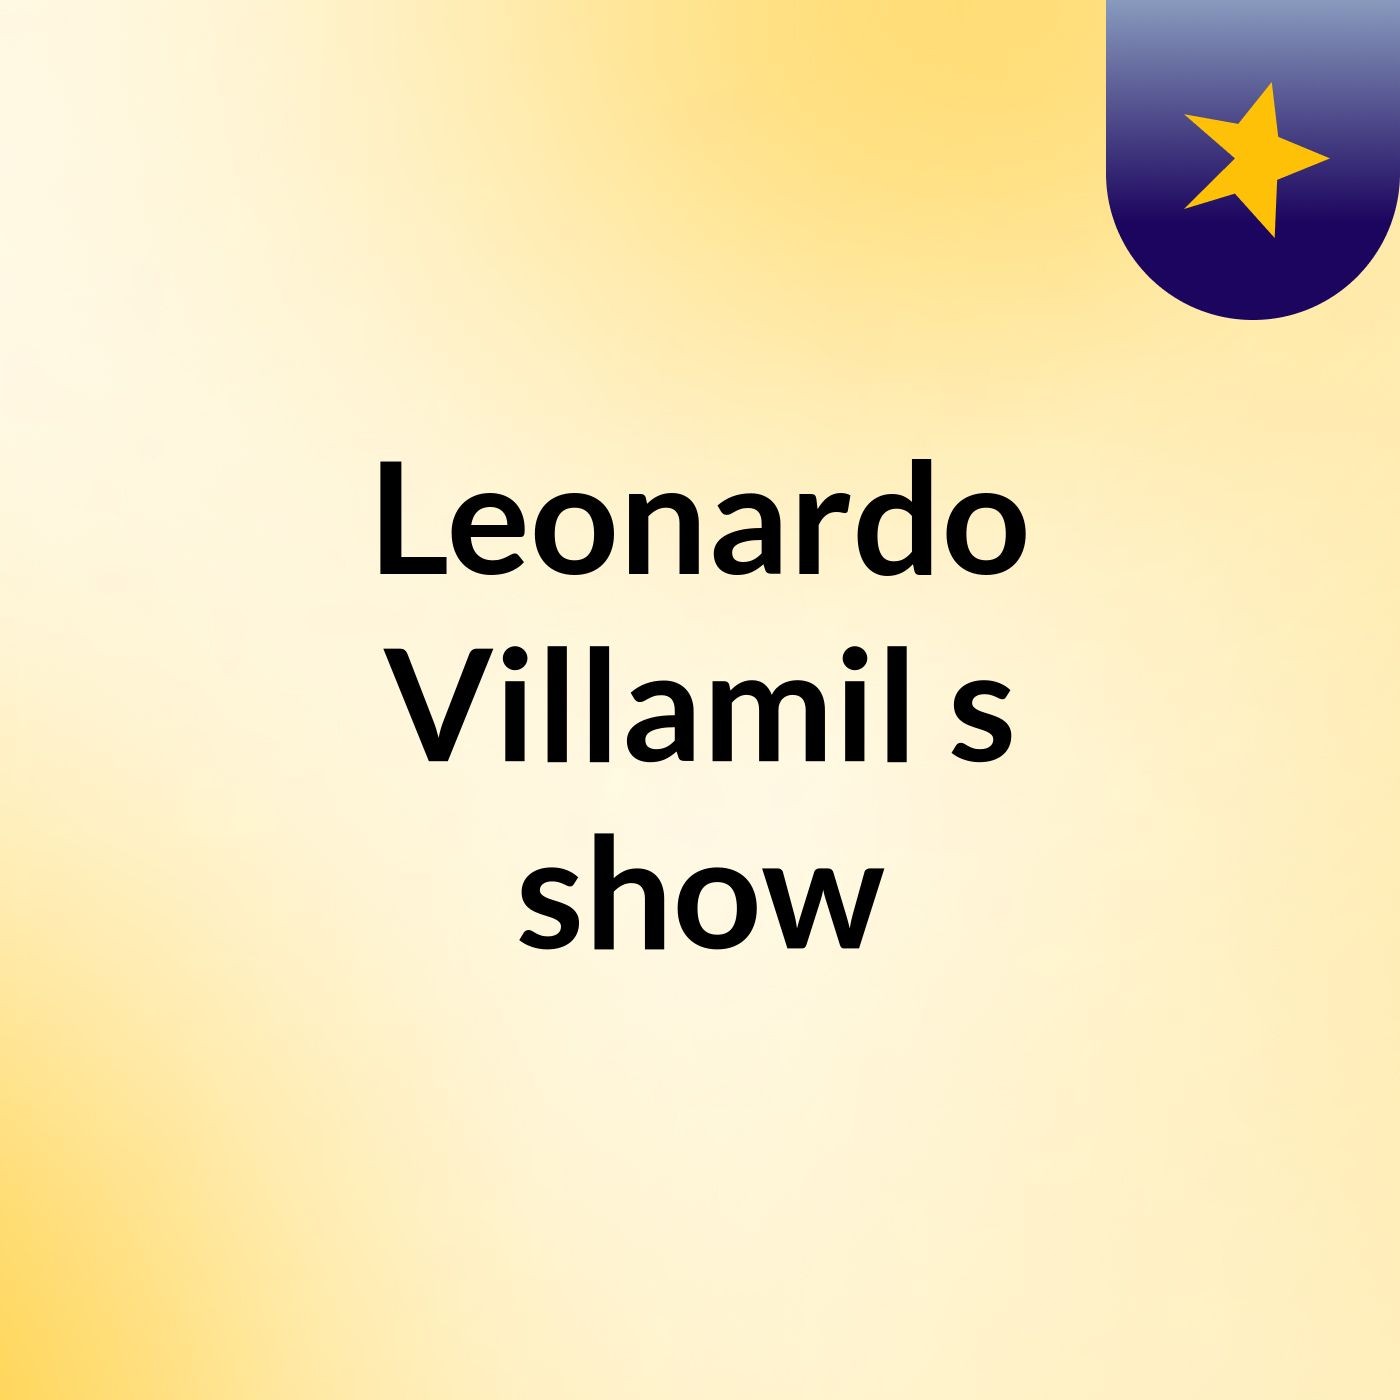 Leonardo Villamil's show